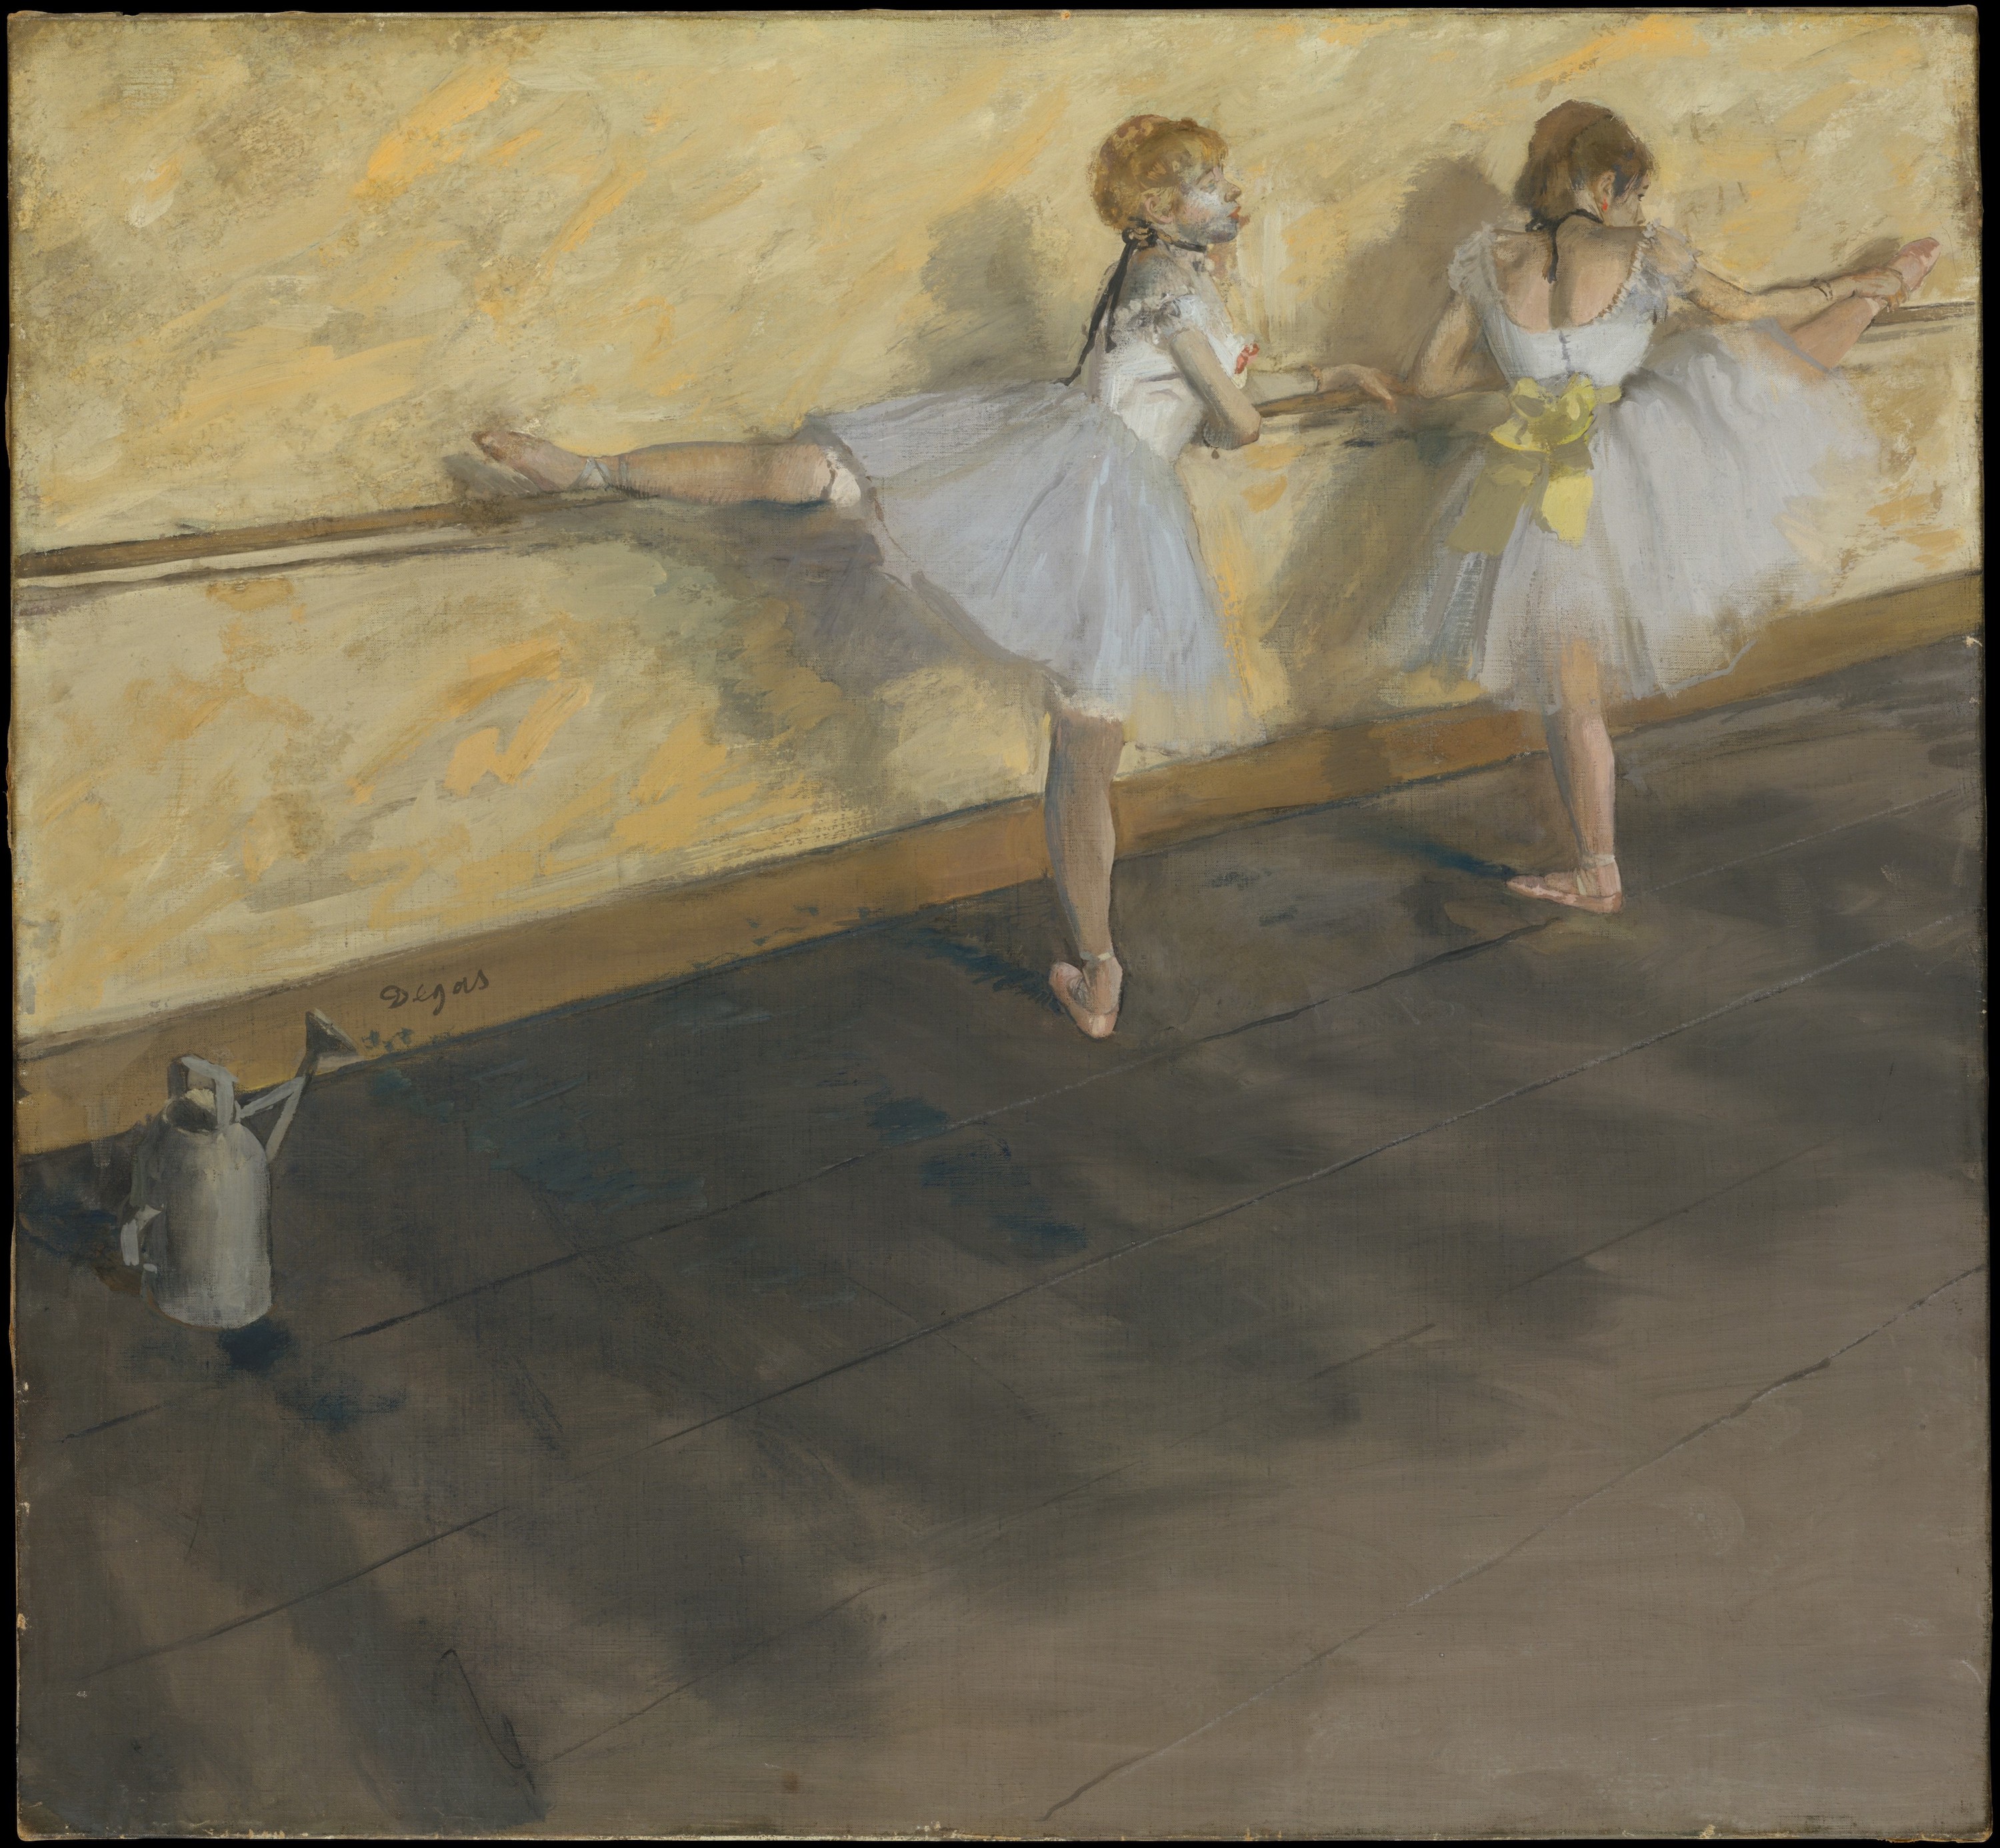 رقصنده ها در حال تمرین در سالن باله by Edgar Degas - 1877 - 75.6 x 81.3 cm 